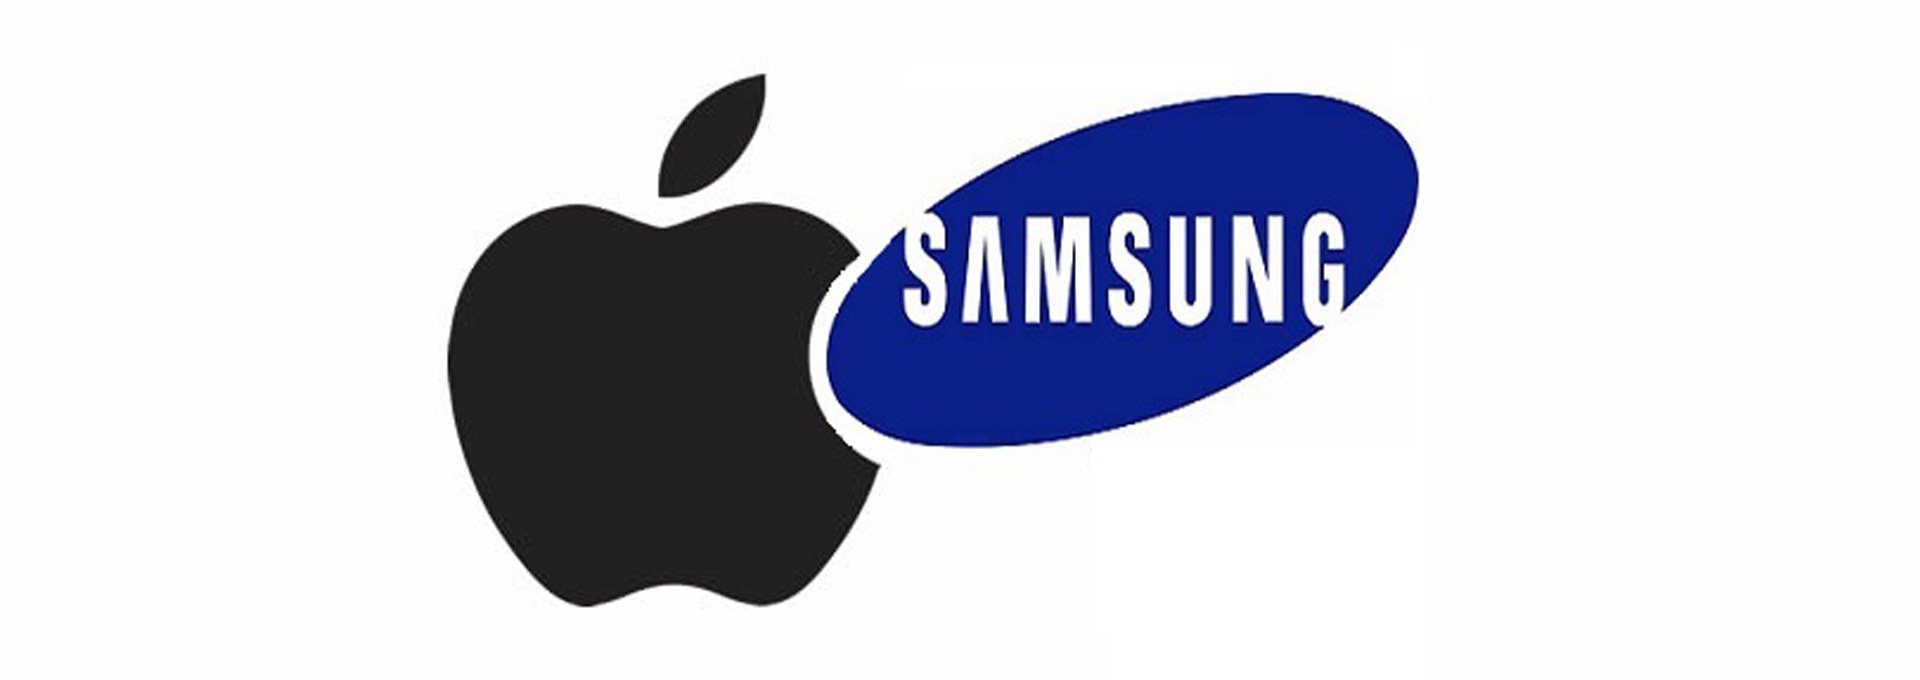 Après les décisions de justice du procès Apple Vs Samsung